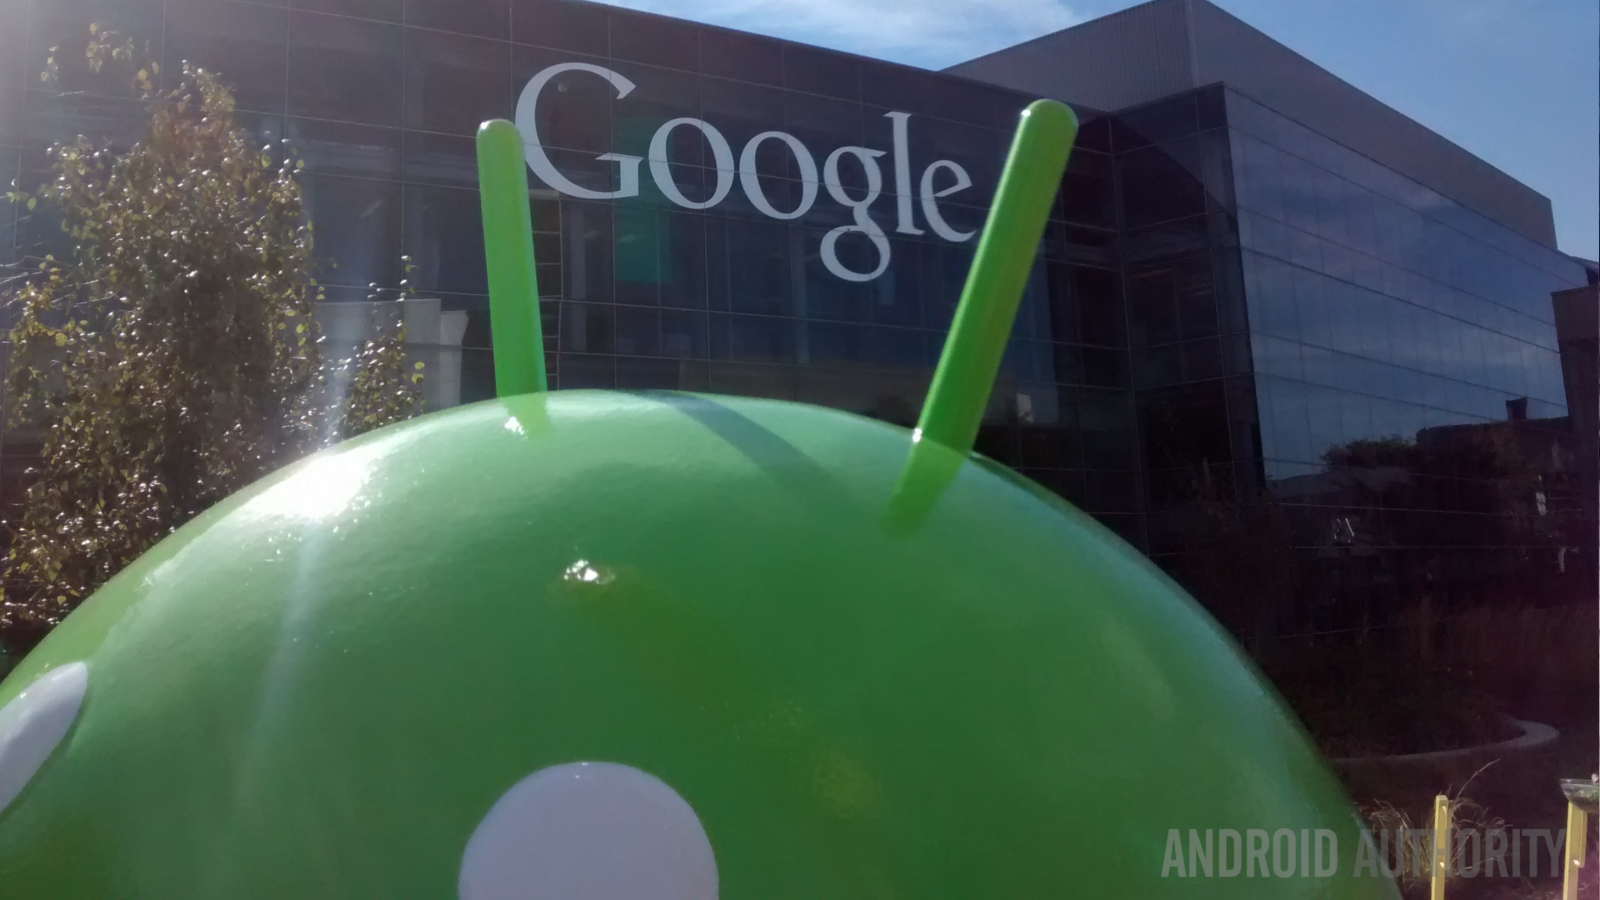 Google logo Android head